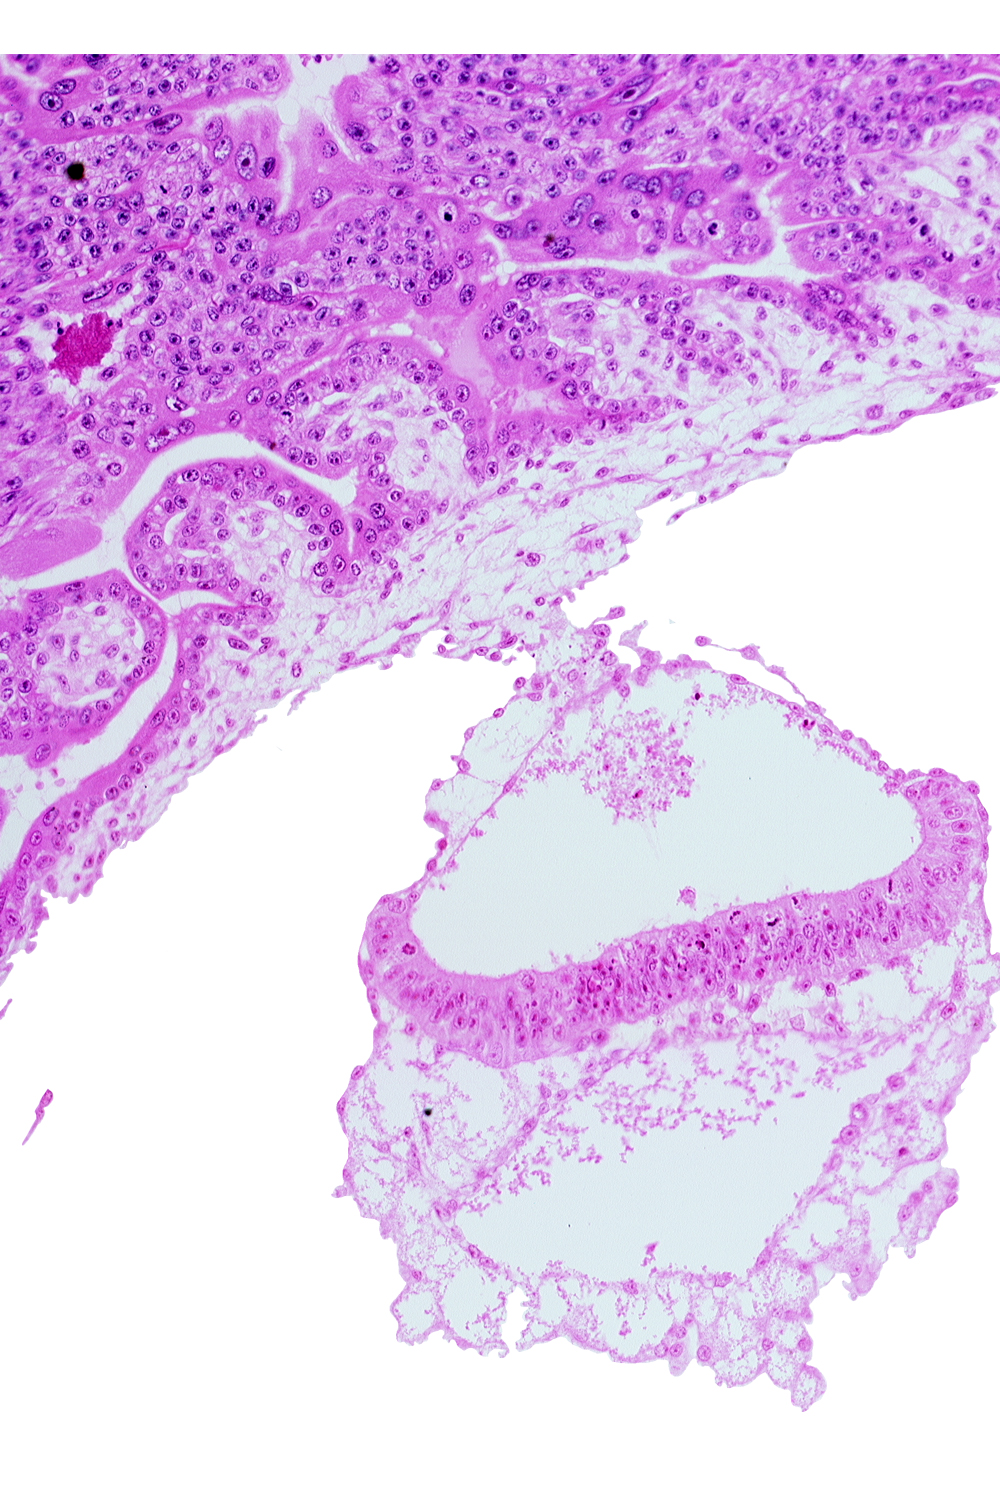 amniotic cavity, cephalic end of notochordal process, epiblast, extra-embryonic endoderm, hemangiogenic tissue, hypoblast, mesothelium of umbilical vesicle, presumptive neural plate, two-layered amnion, umbilical vesicle cavity